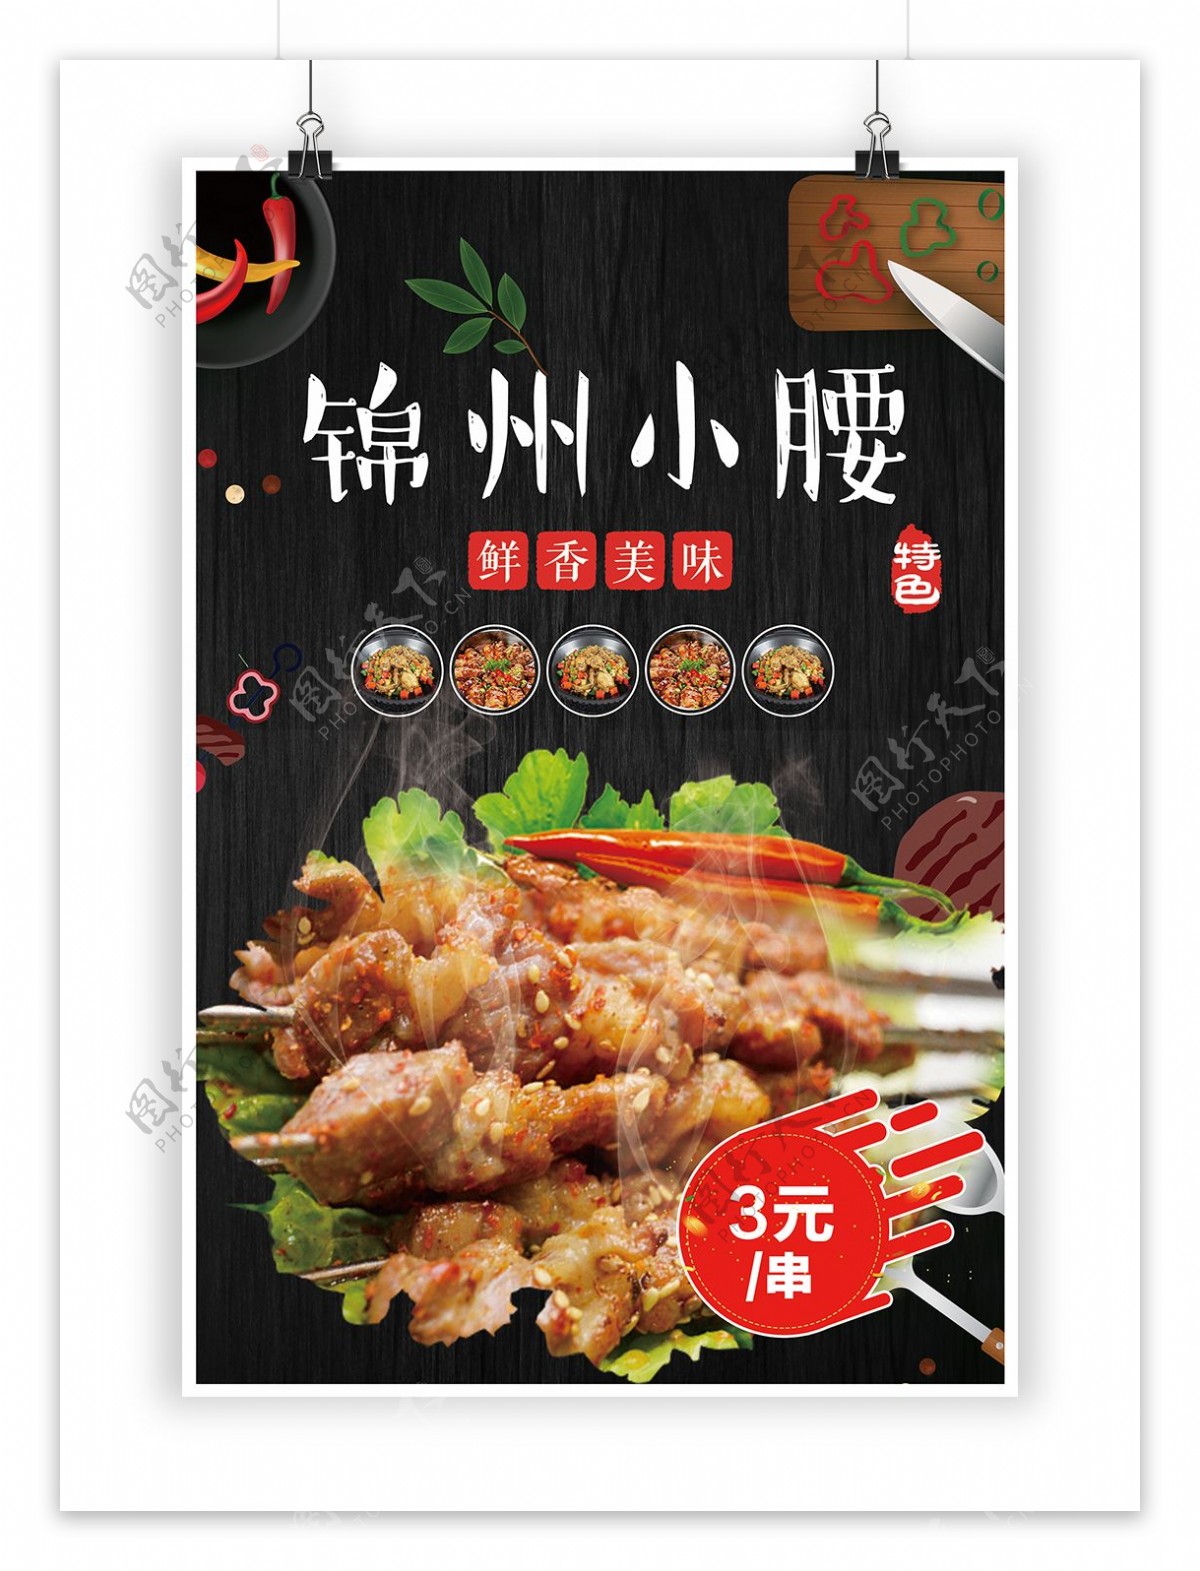 锦州小腰烧烤店饭店烧烤印刷单页灯箱海报